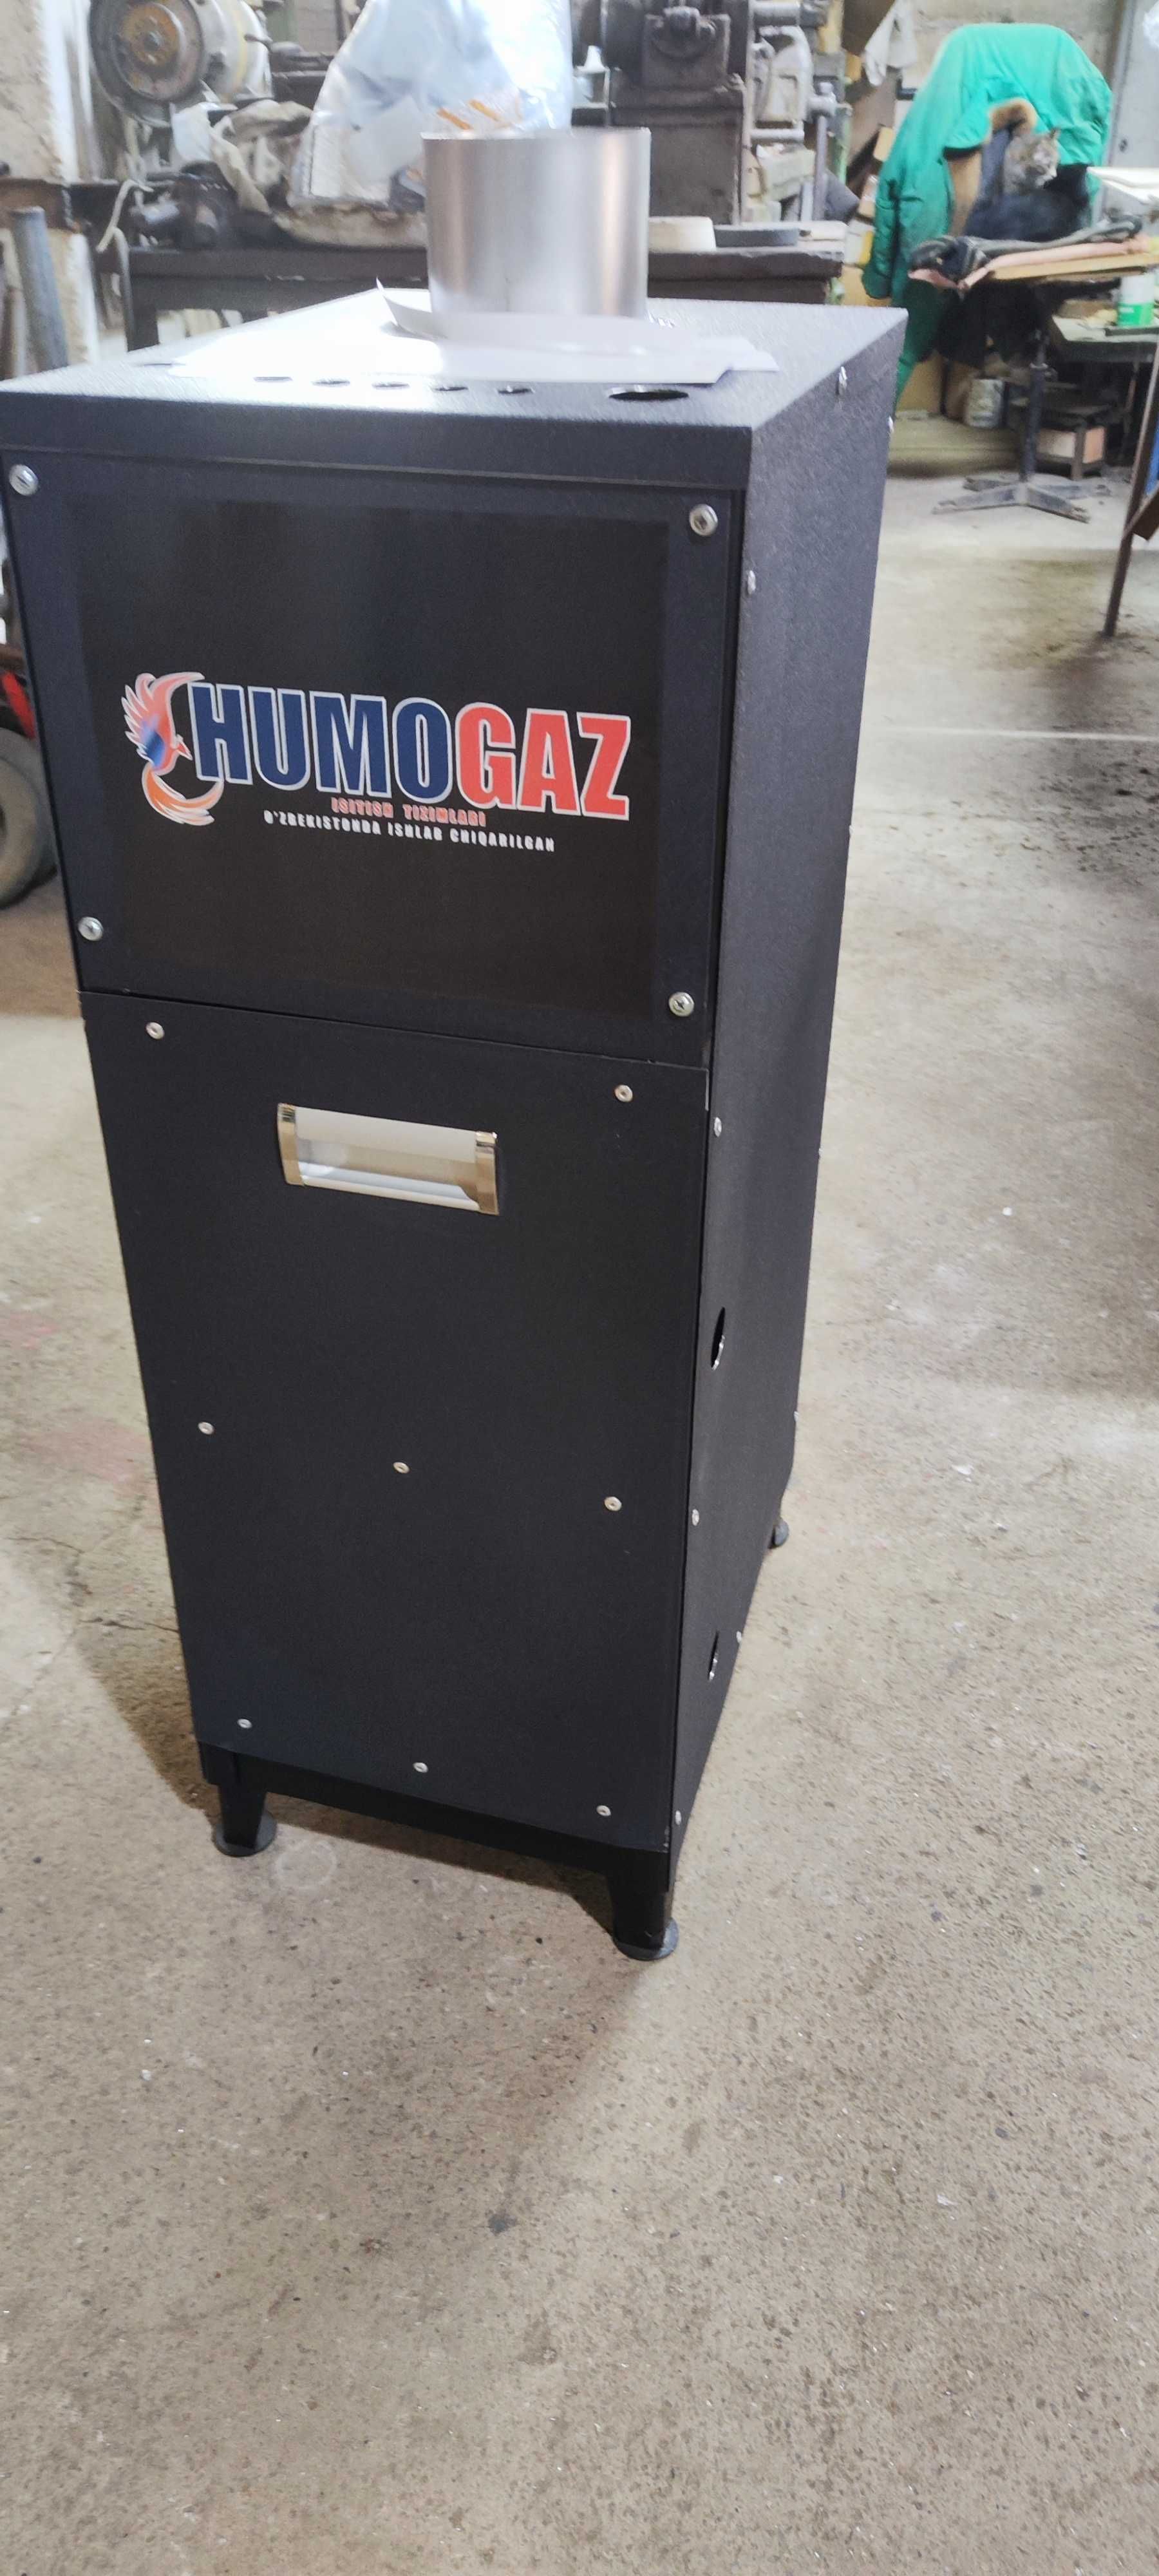 газовый котел напольный HumoGaz HG-11 (11 кВт на 100 кв.м.)